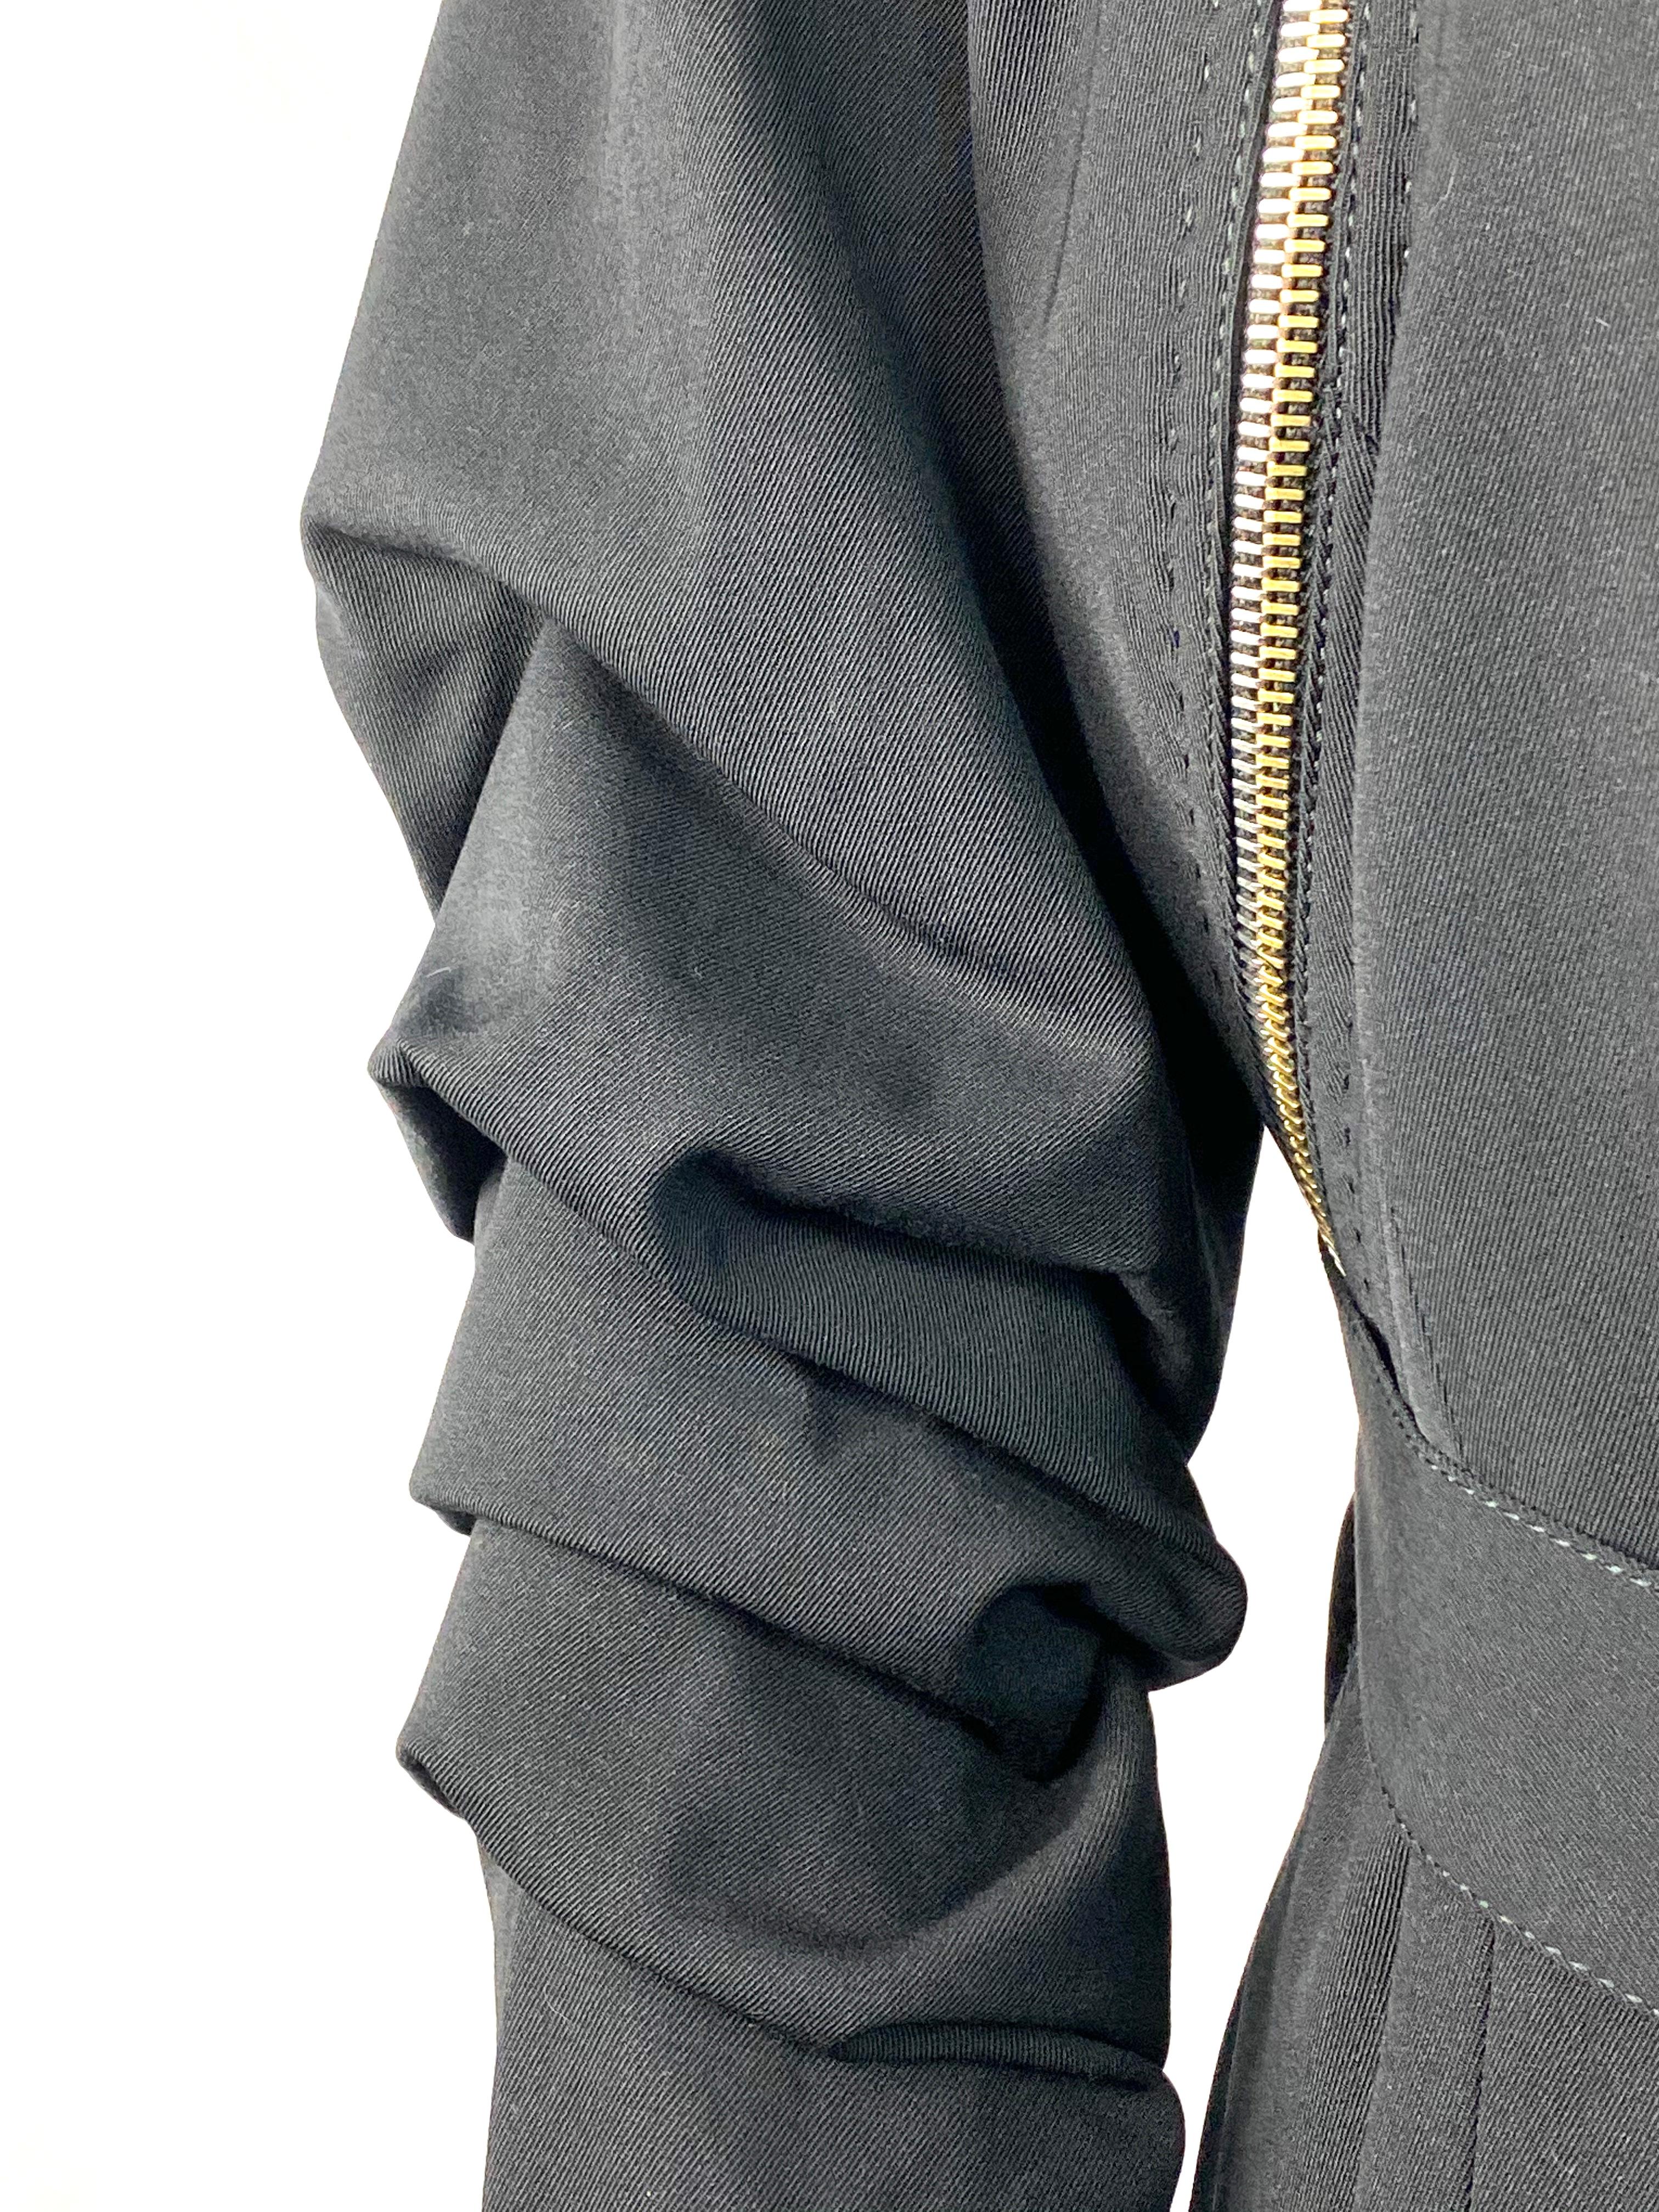 Gianfranco Ferre Black Wool Long Coat Jacket w/ Belt Size 44 For Sale 10